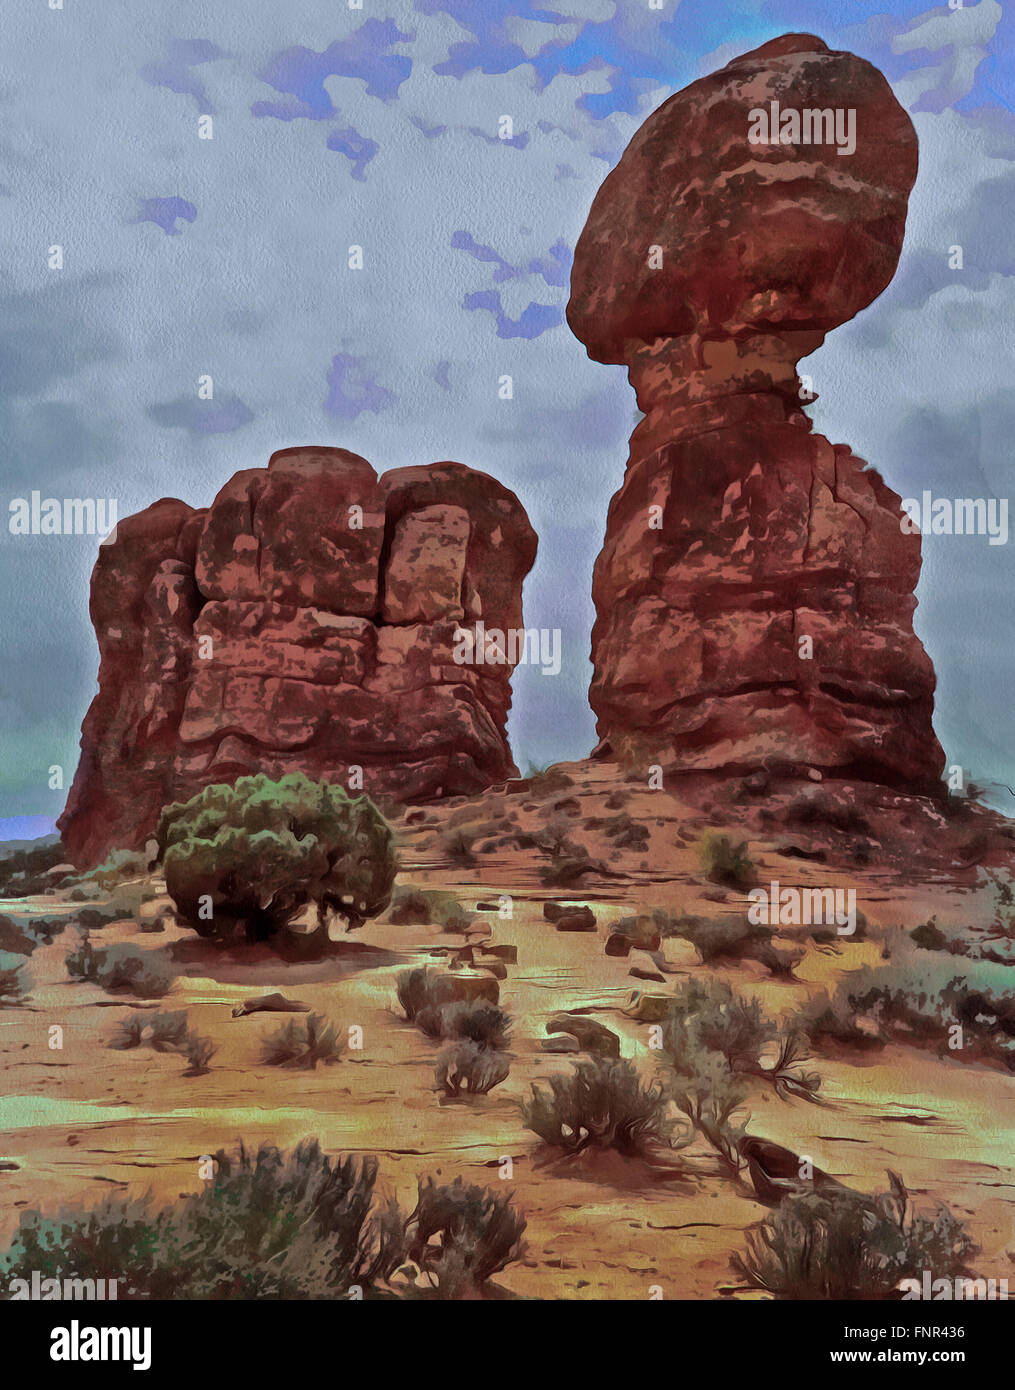 Aquarelle image de Balanced Rock à Arches, Utah .Photographie dans des couleurs est manipulée de manière numérique. Banque D'Images